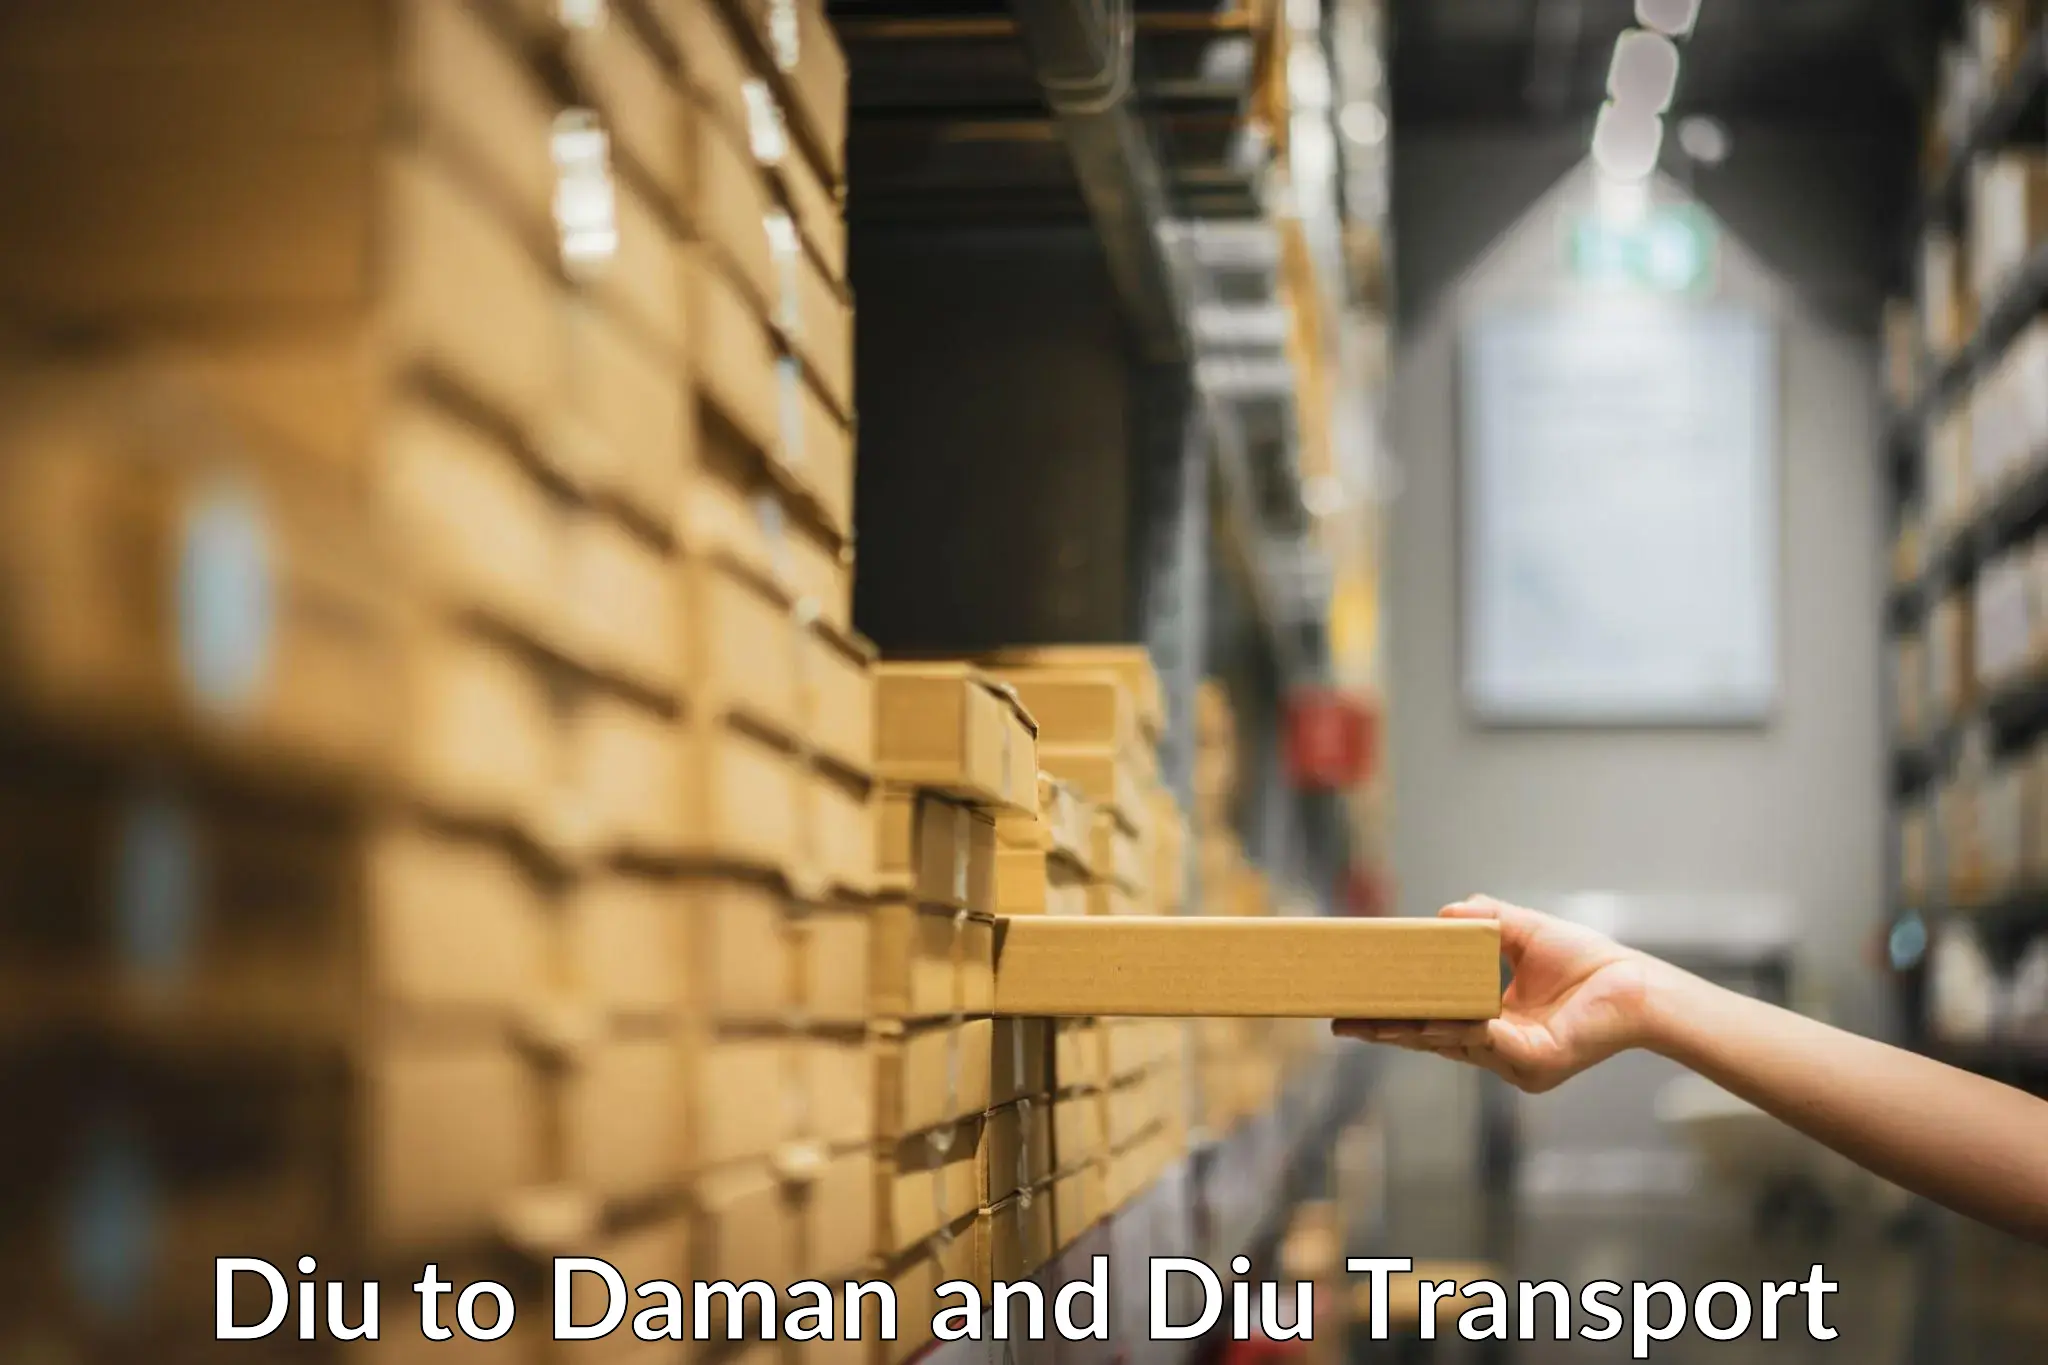 Express transport services Diu to Daman and Diu